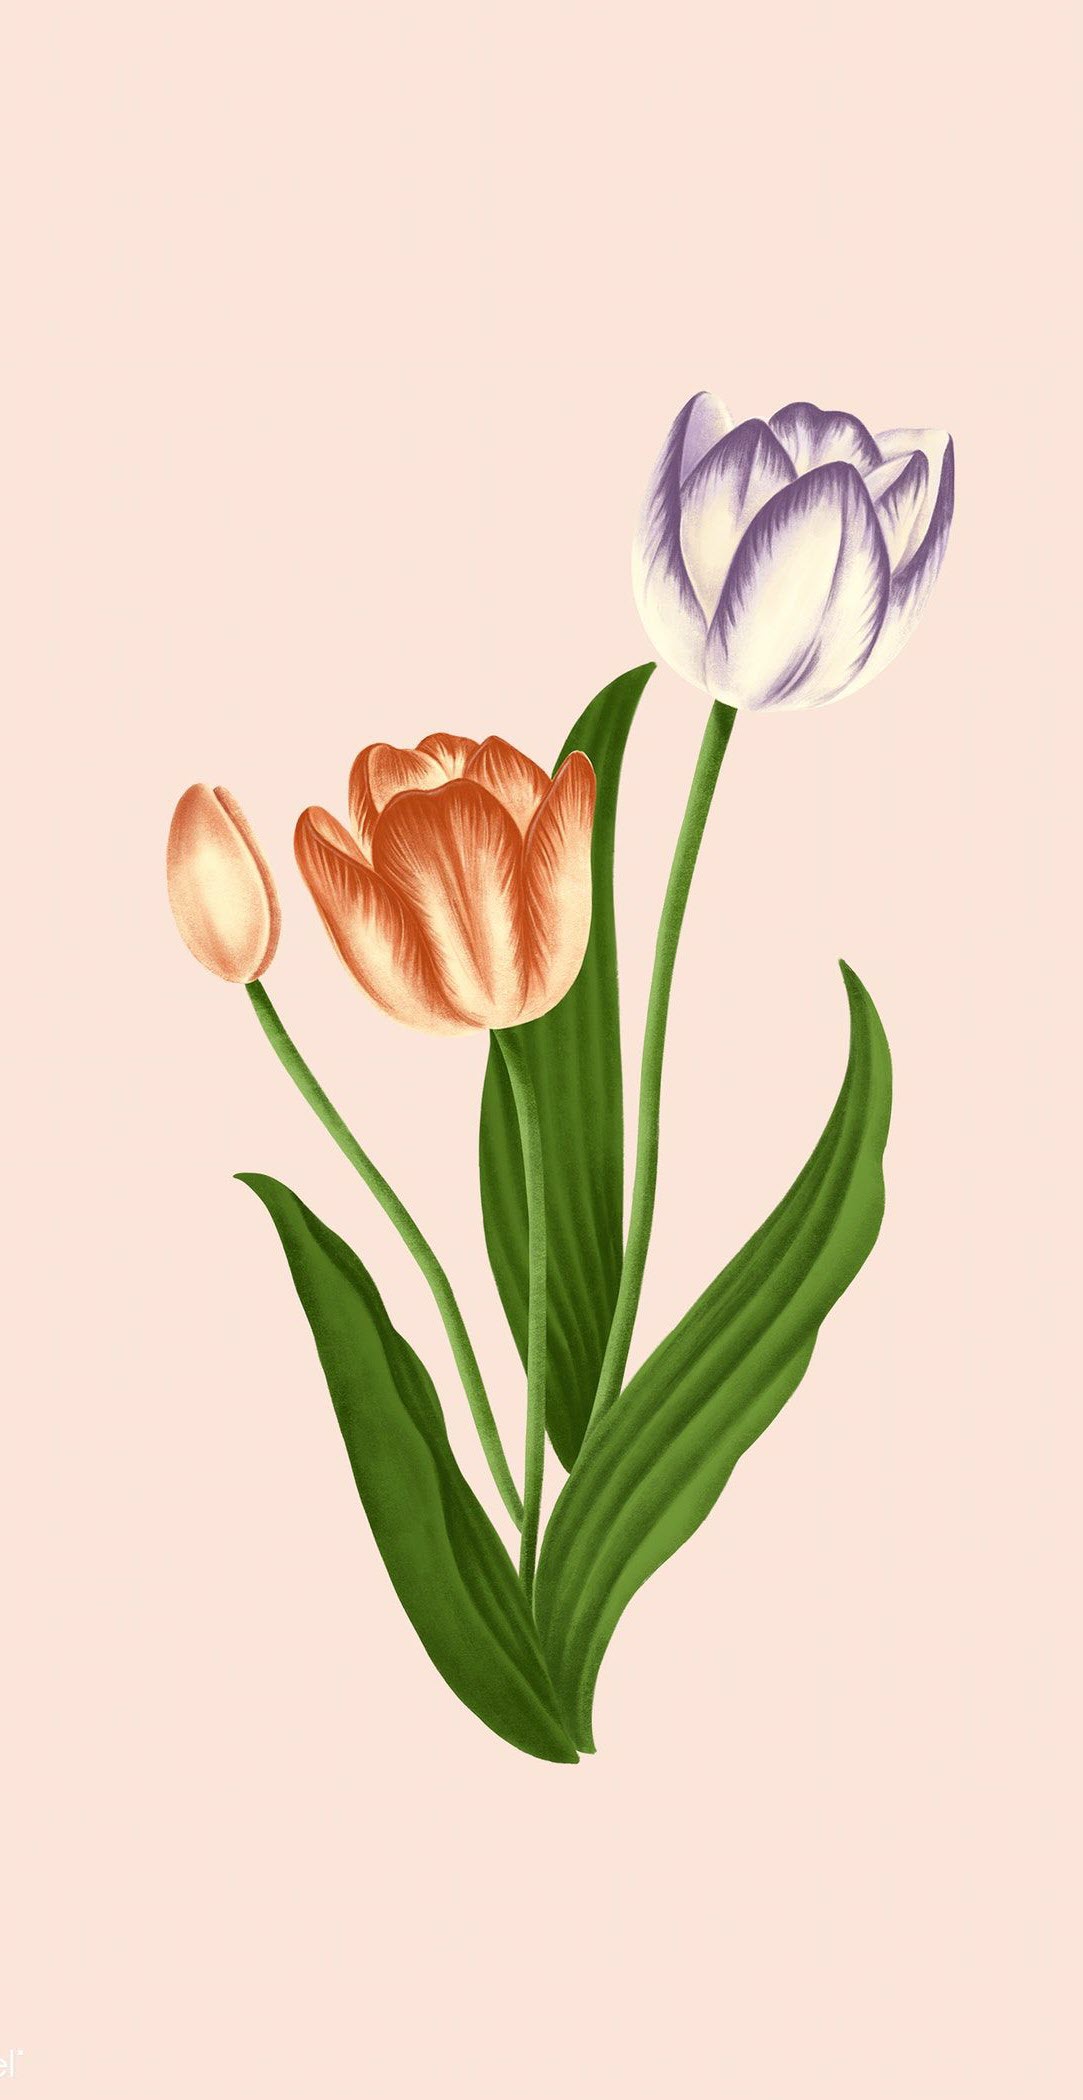 Hình nền hoa tulip cho điện thoại